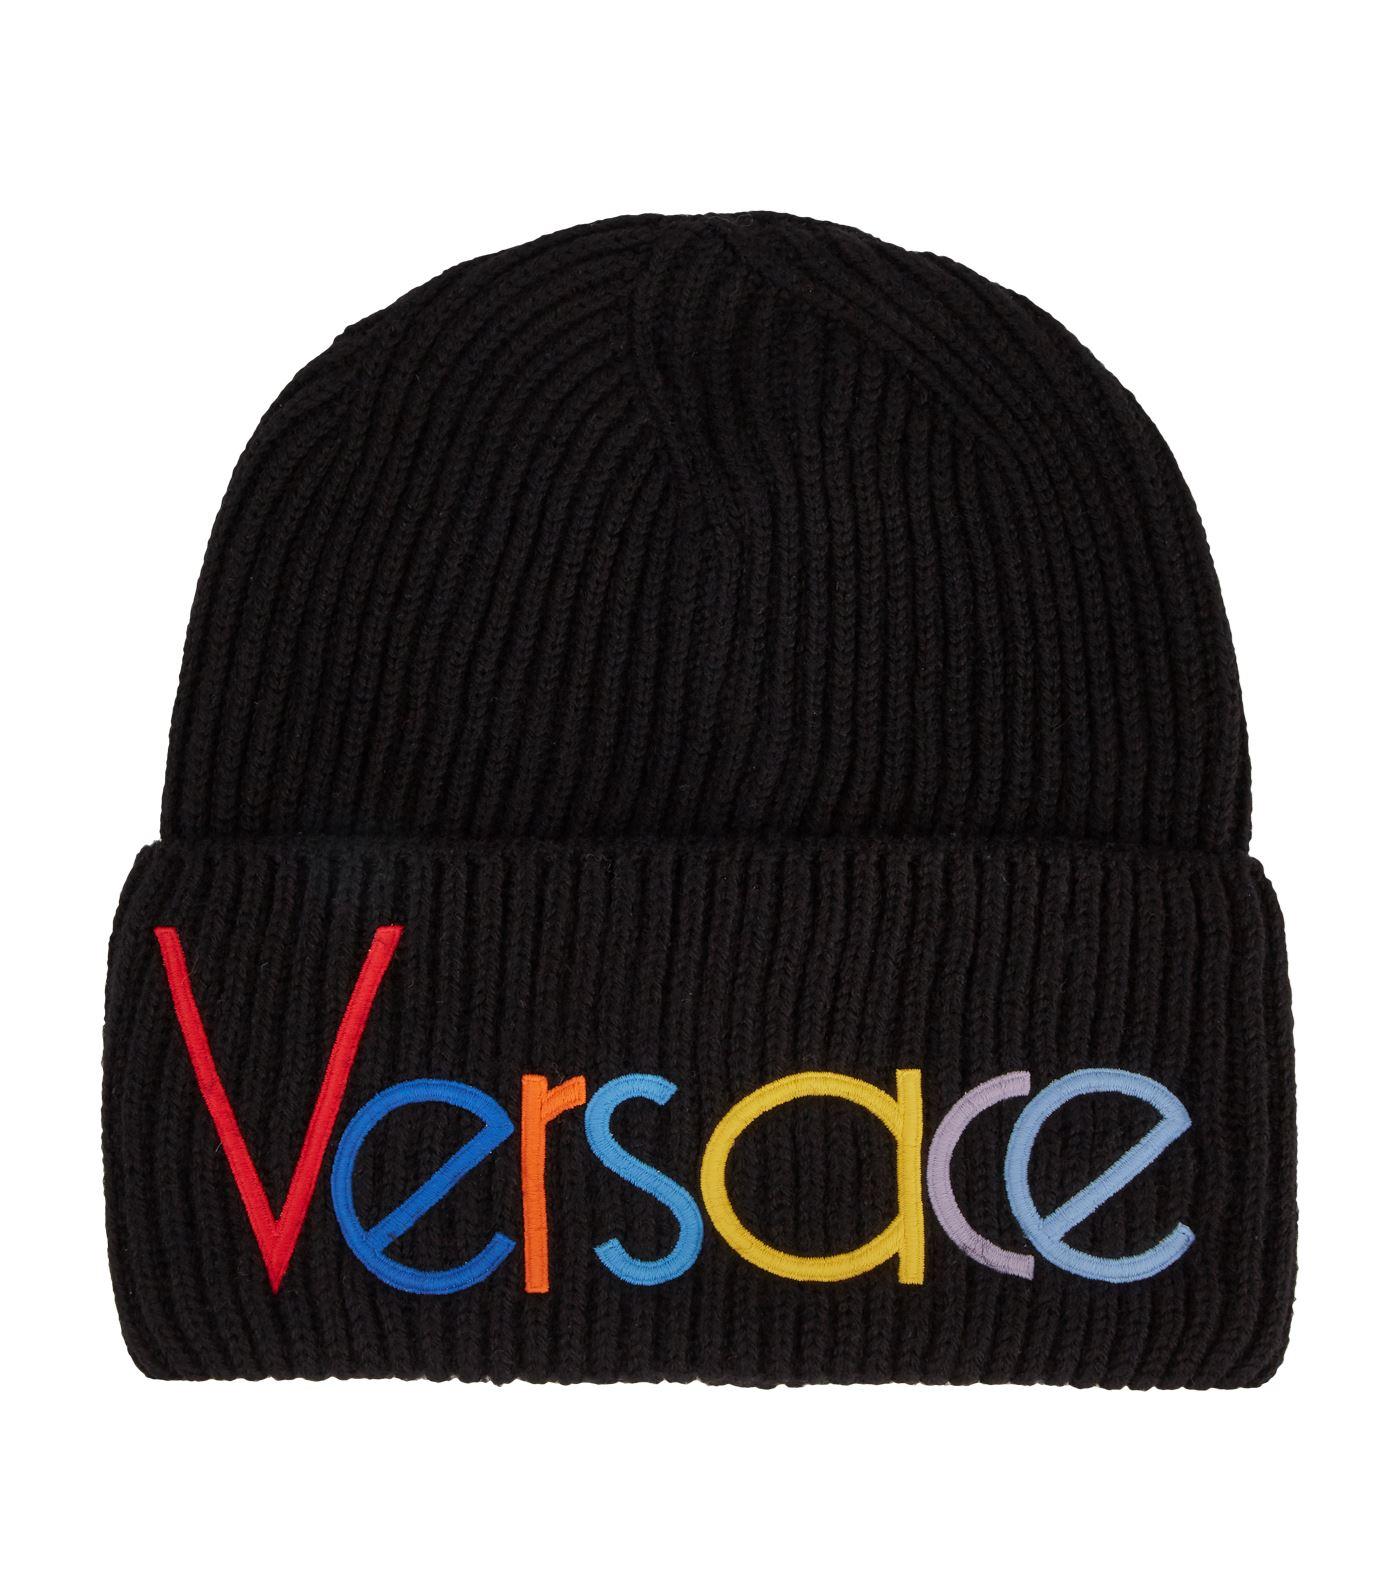 versace beanie hat